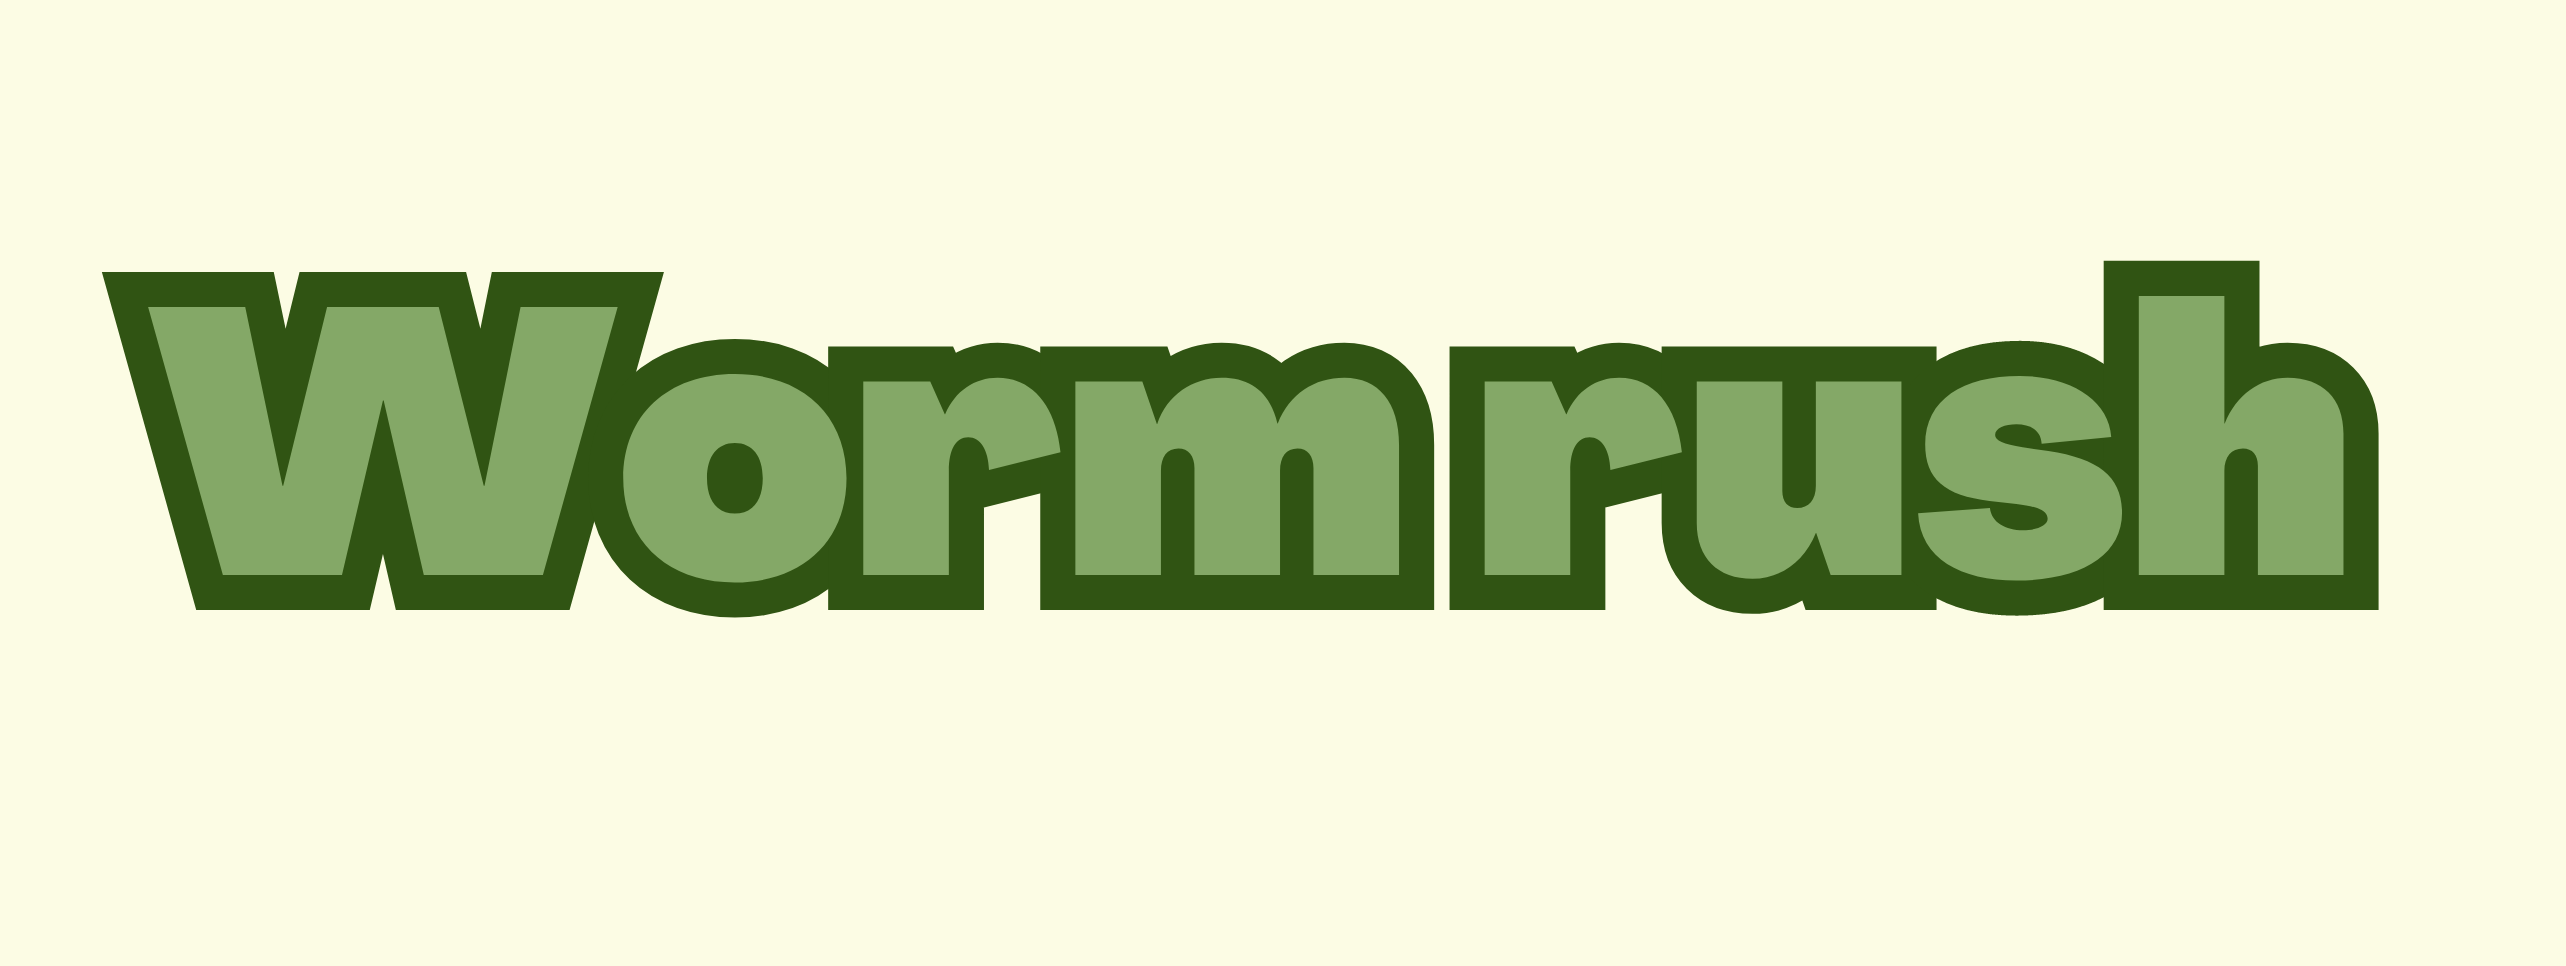 Wormrush